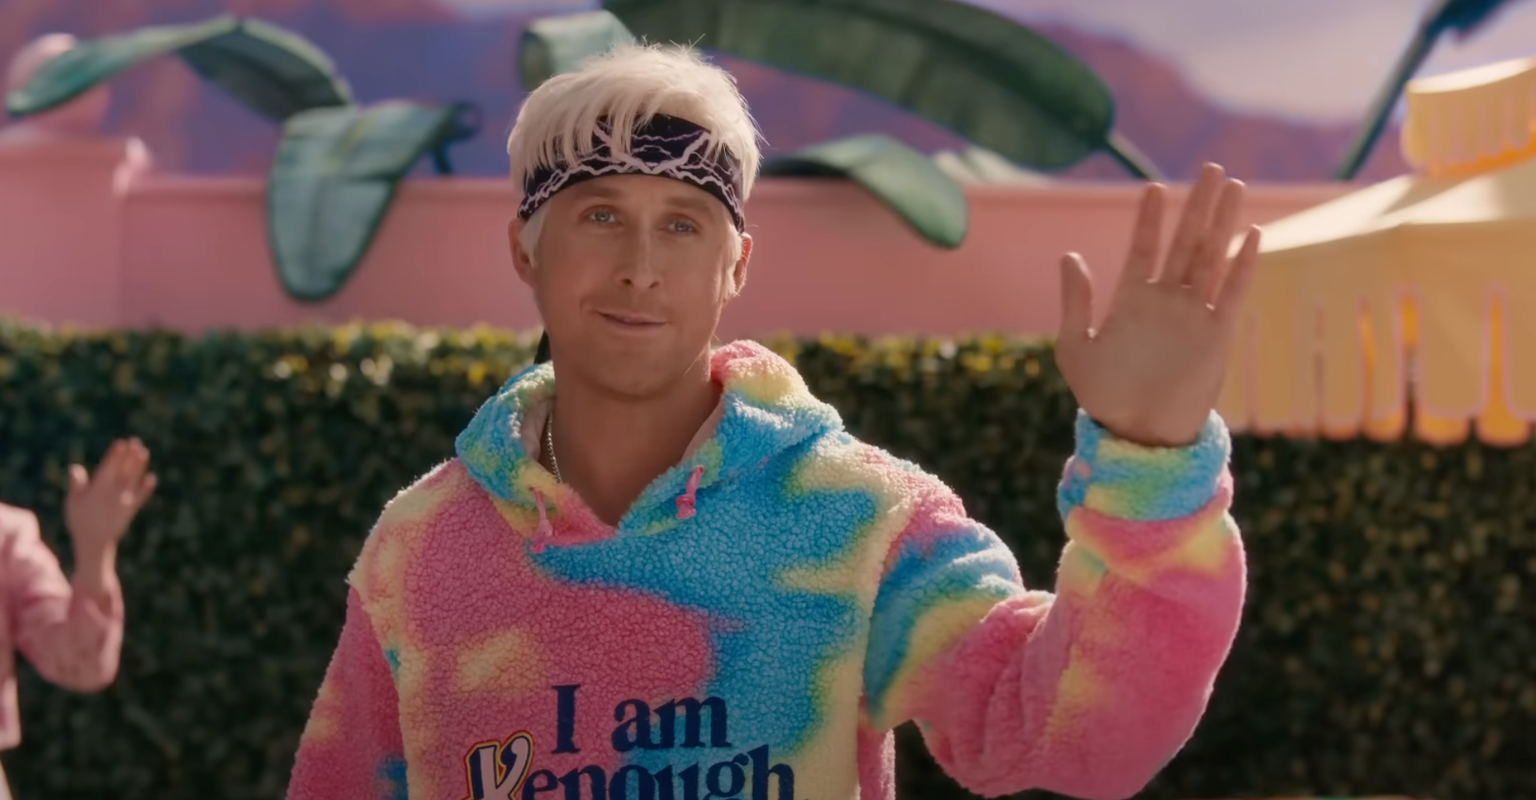 Ryan Gosling Teases 'I'm Just Ken (Merry Kristmas Barbie)' Song